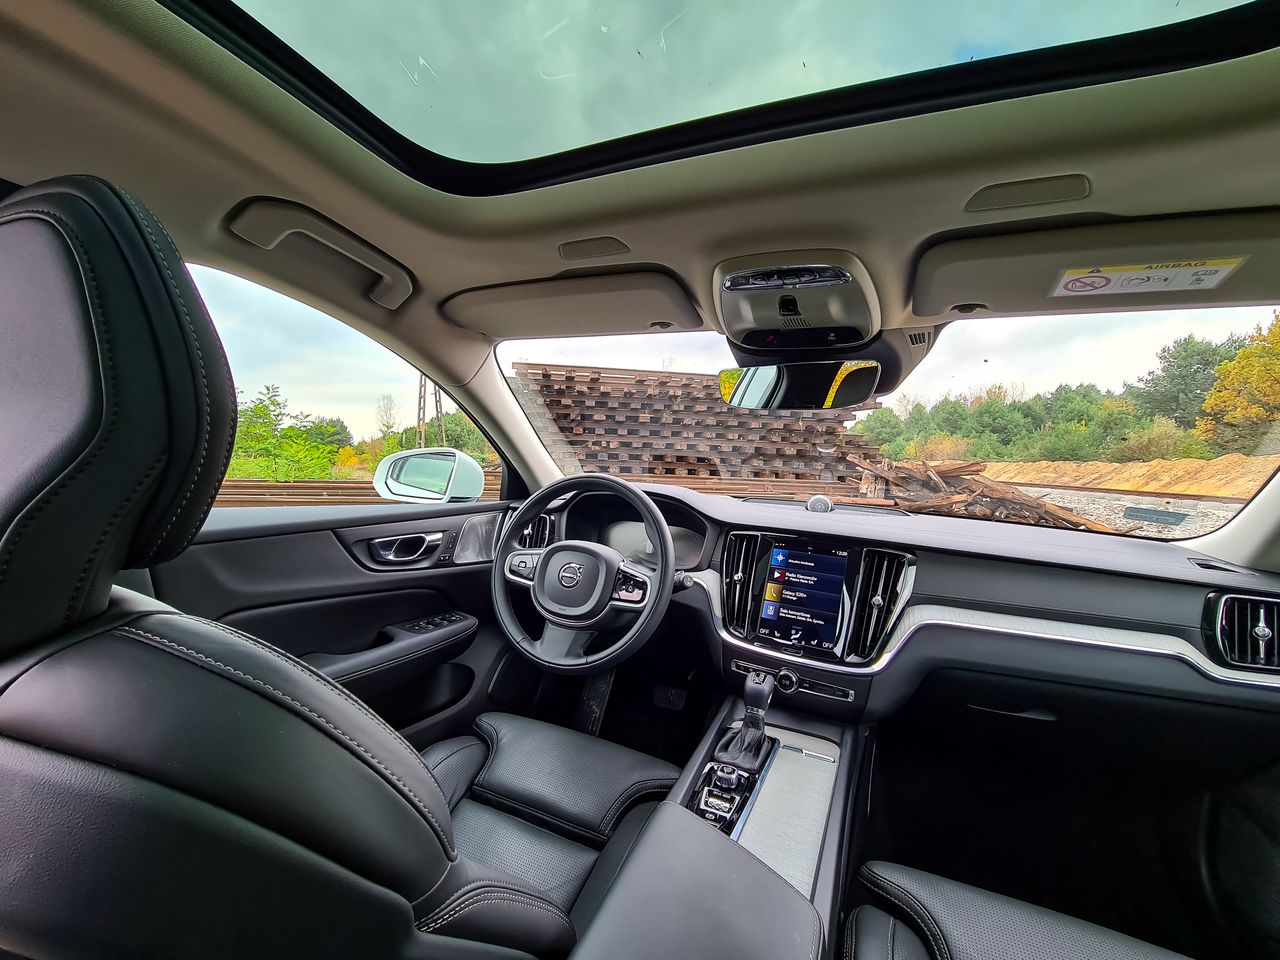 Volvo V60 Cross Country: System info-rozrywki, audio Bowers & Wilkins i systemy bezpieczeństwa - Nowoczesne technologie i gadżety są ukryte, aby nie rozpraszać kierowcy podczas jazdy